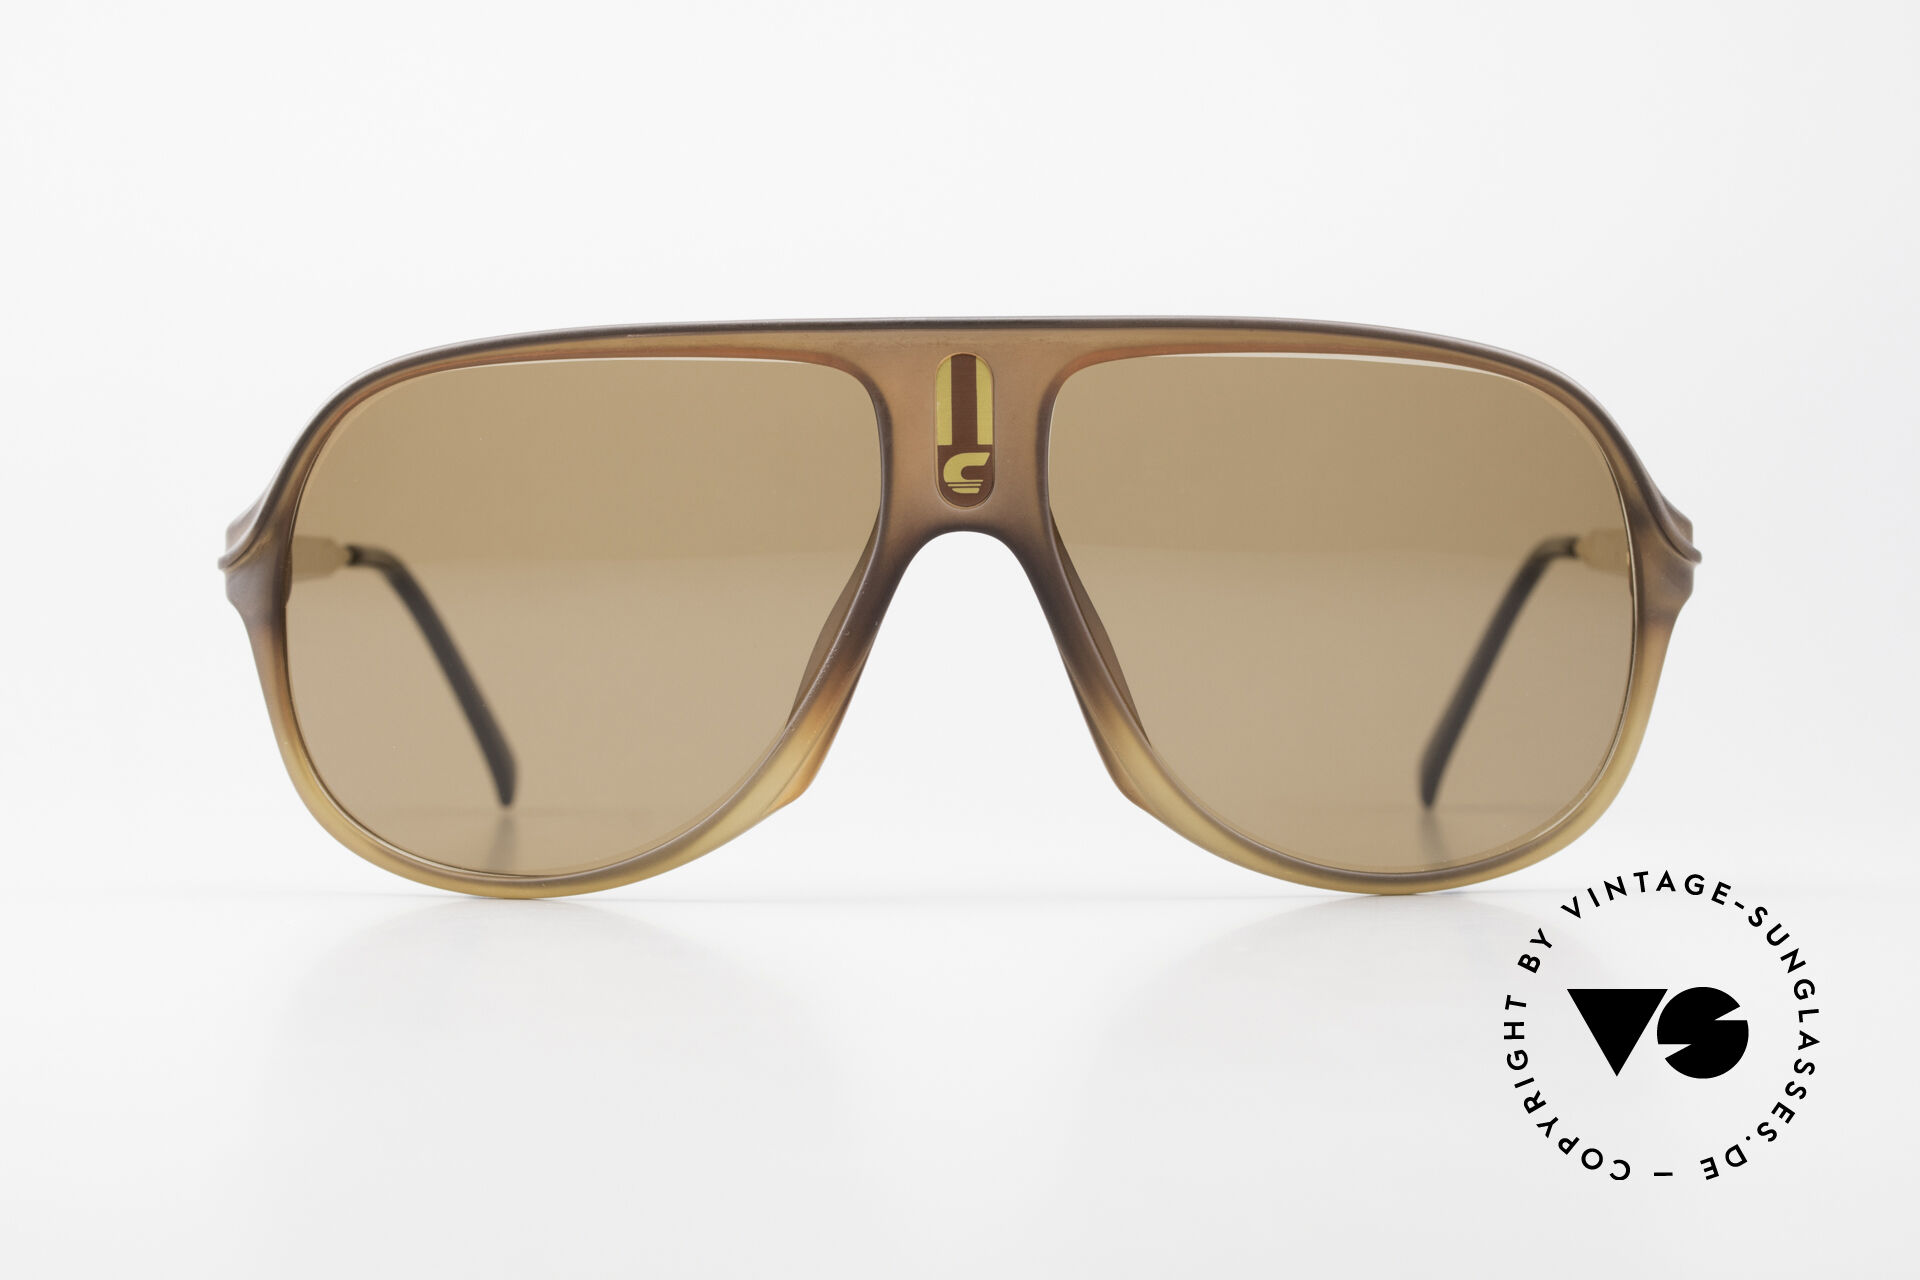 Sonnenbrillen Carrera 5547 80er Herren Vintage Brille 